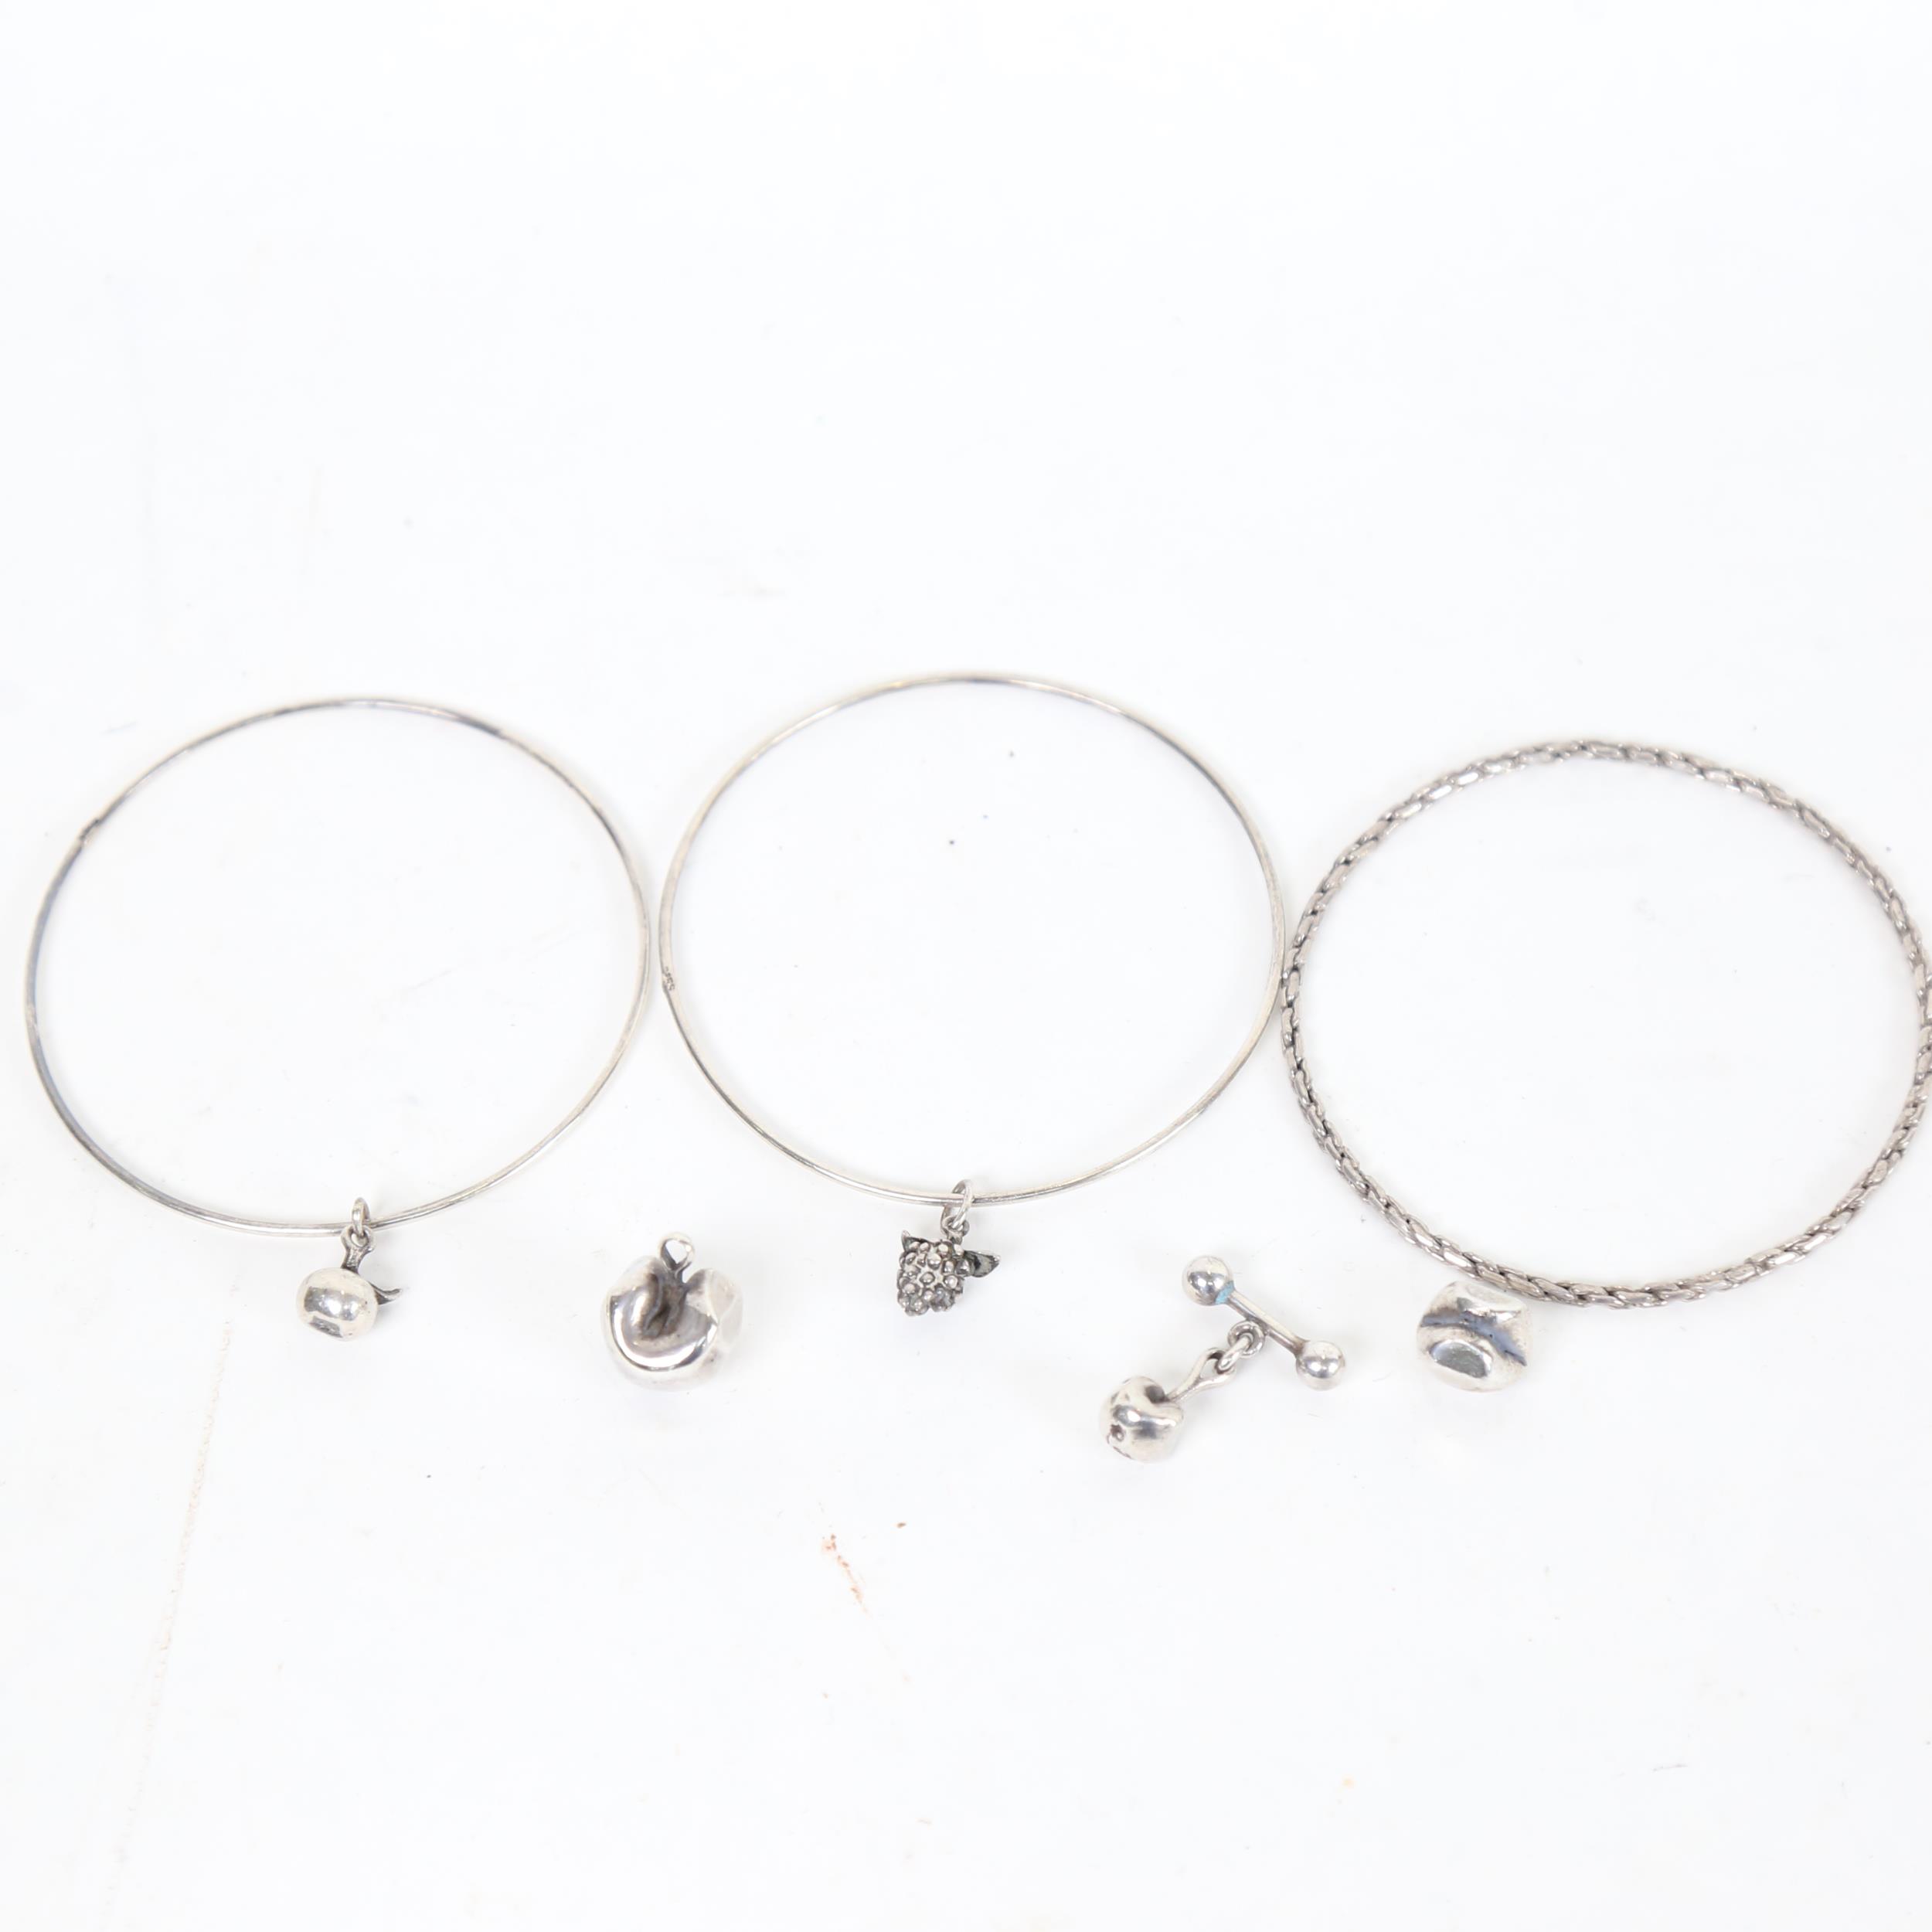 3 various silver bracelets etc